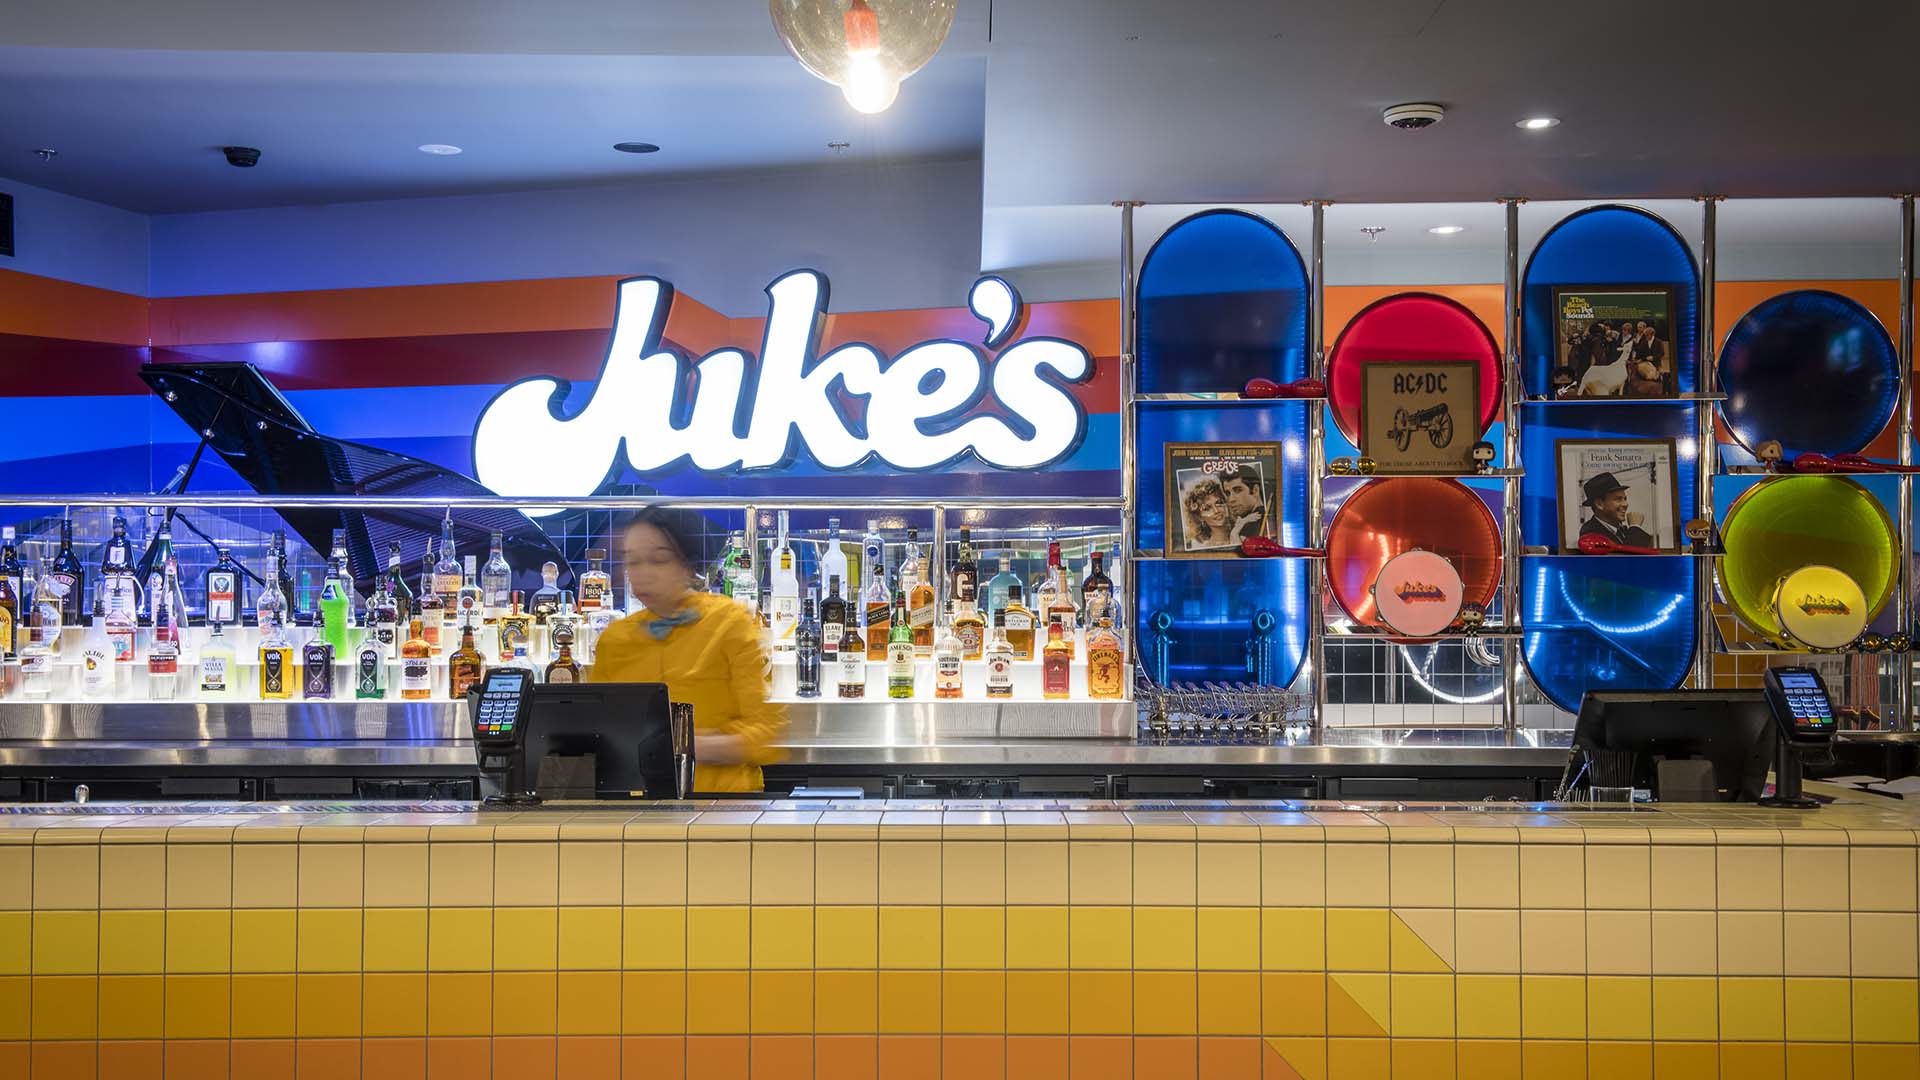 Juke's